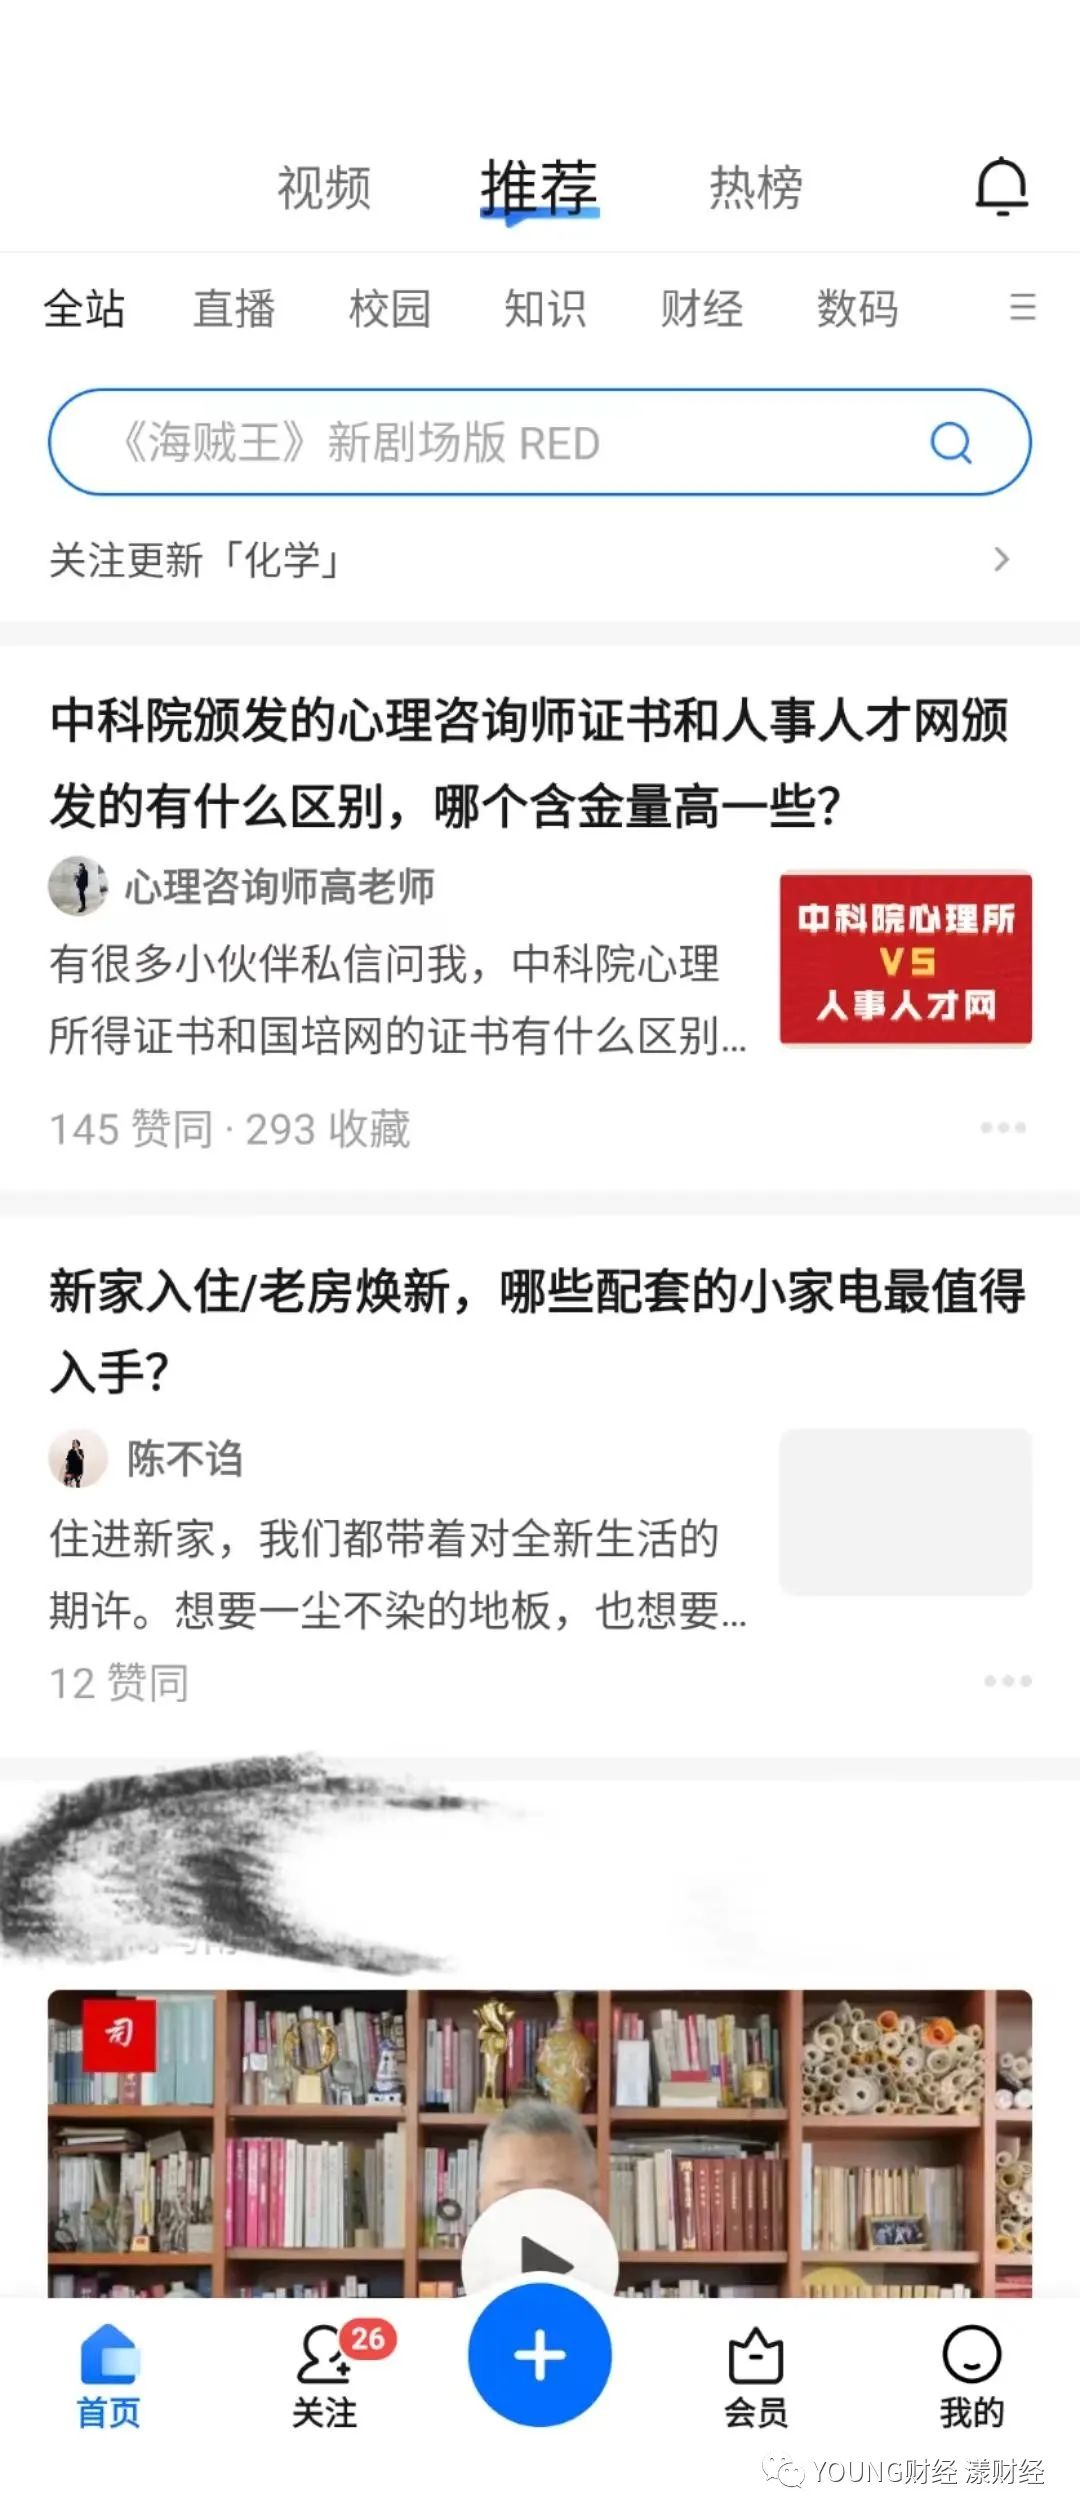 上海家宝医学保健科技有限公司违反广告法被罚-中国质量新闻网